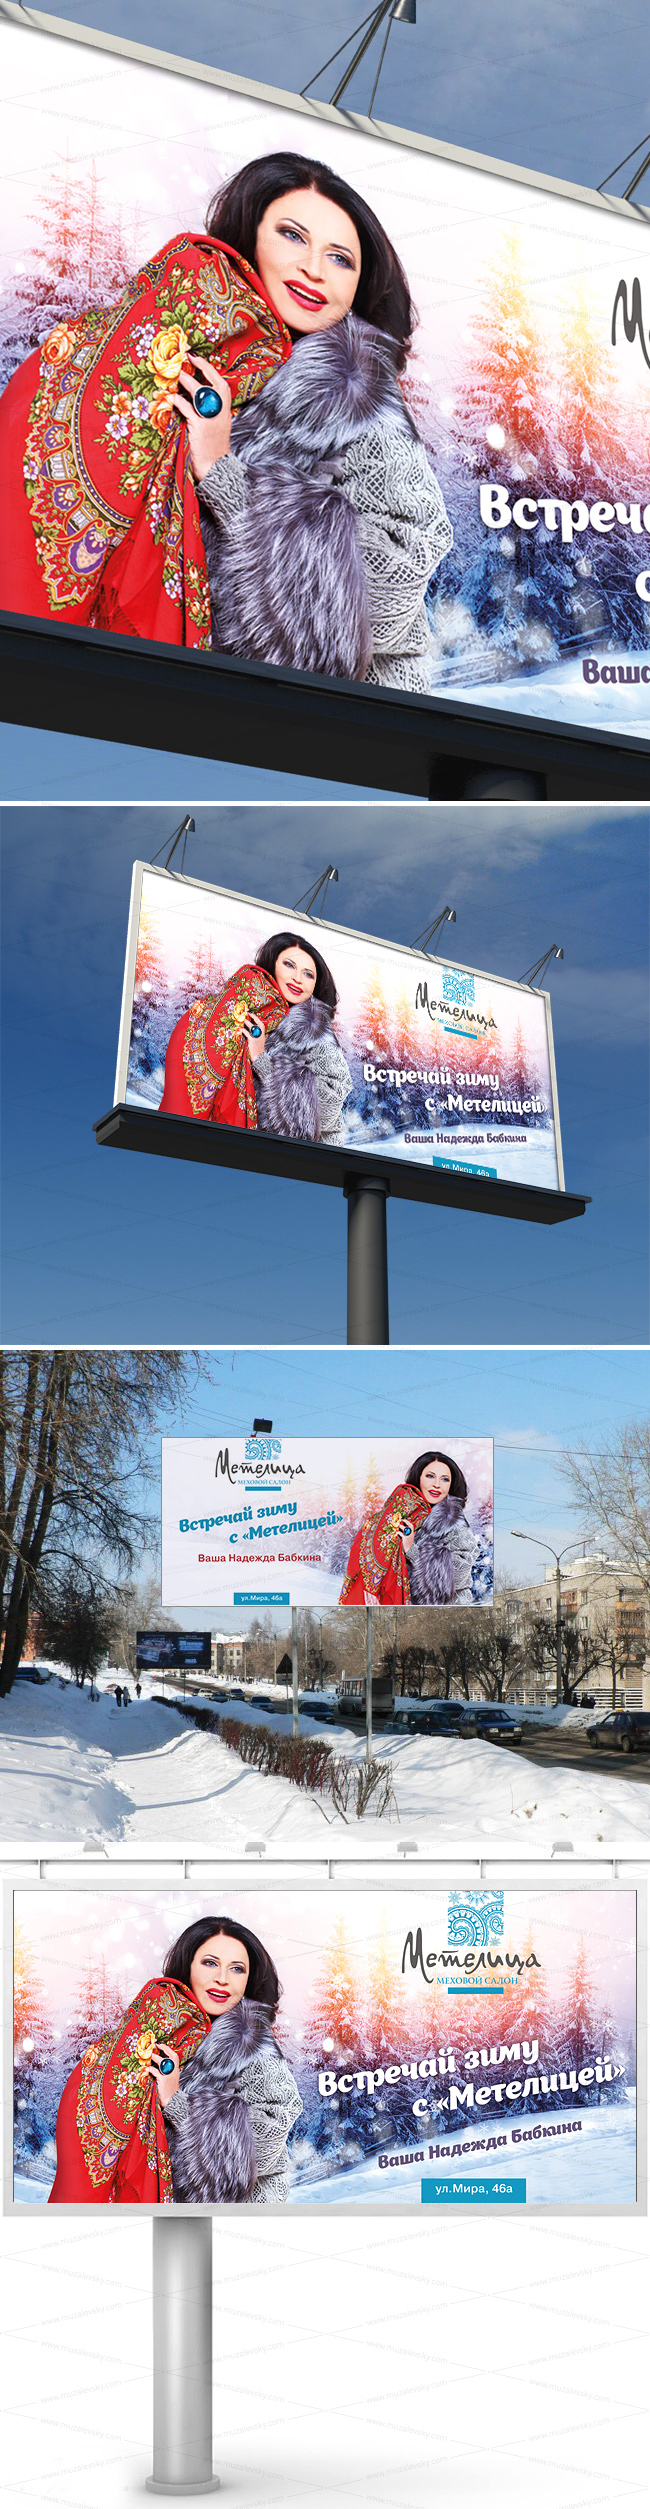 Metelica_Babkina_billboard_m